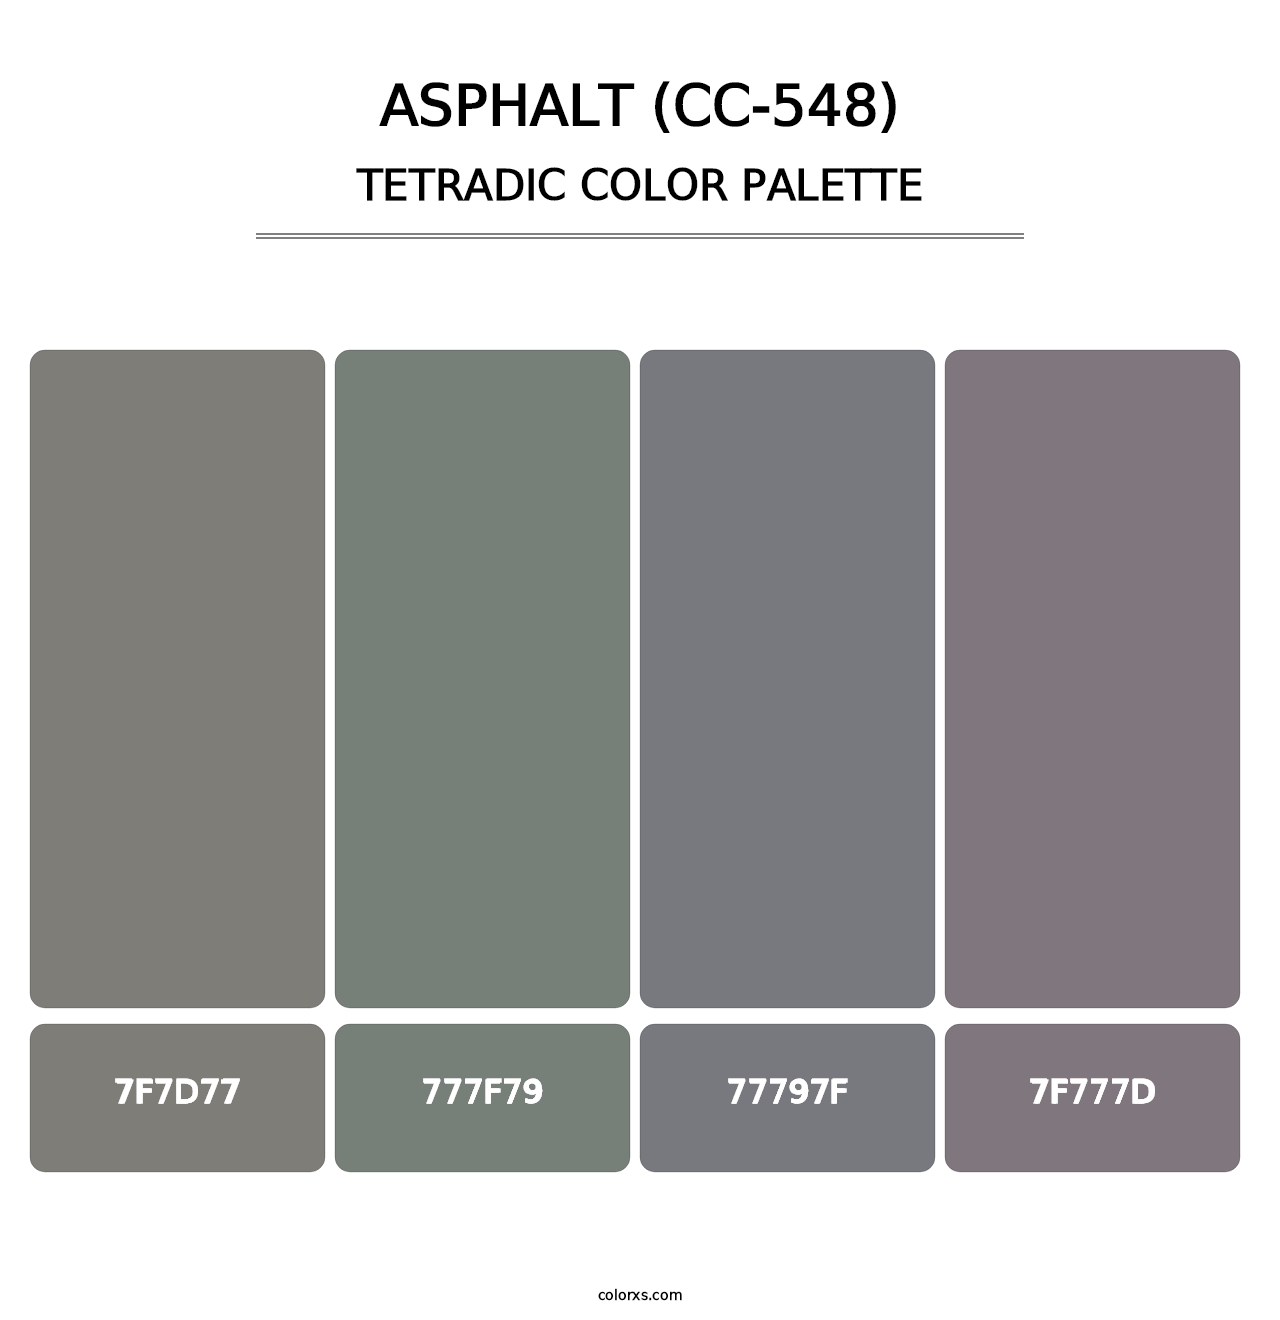 Asphalt (CC-548) - Tetradic Color Palette